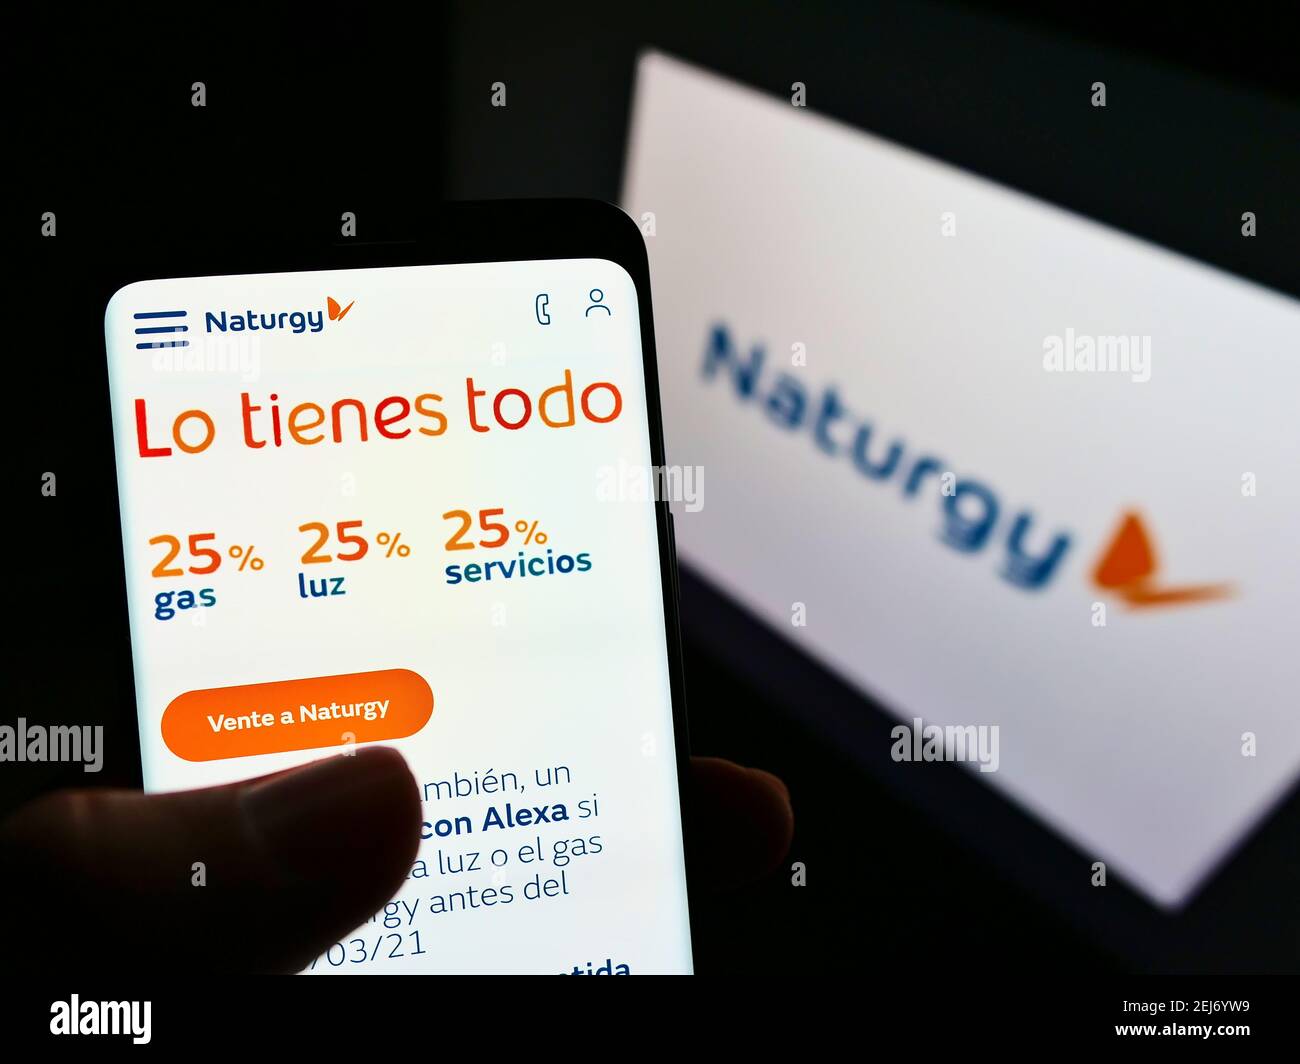 Persona titolare smartphone con sito web della società energetica spagnola Naturgy Energy Group SA su schermo con logo. Mettere a fuoco al centro-sinistra del display del telefono. Foto Stock